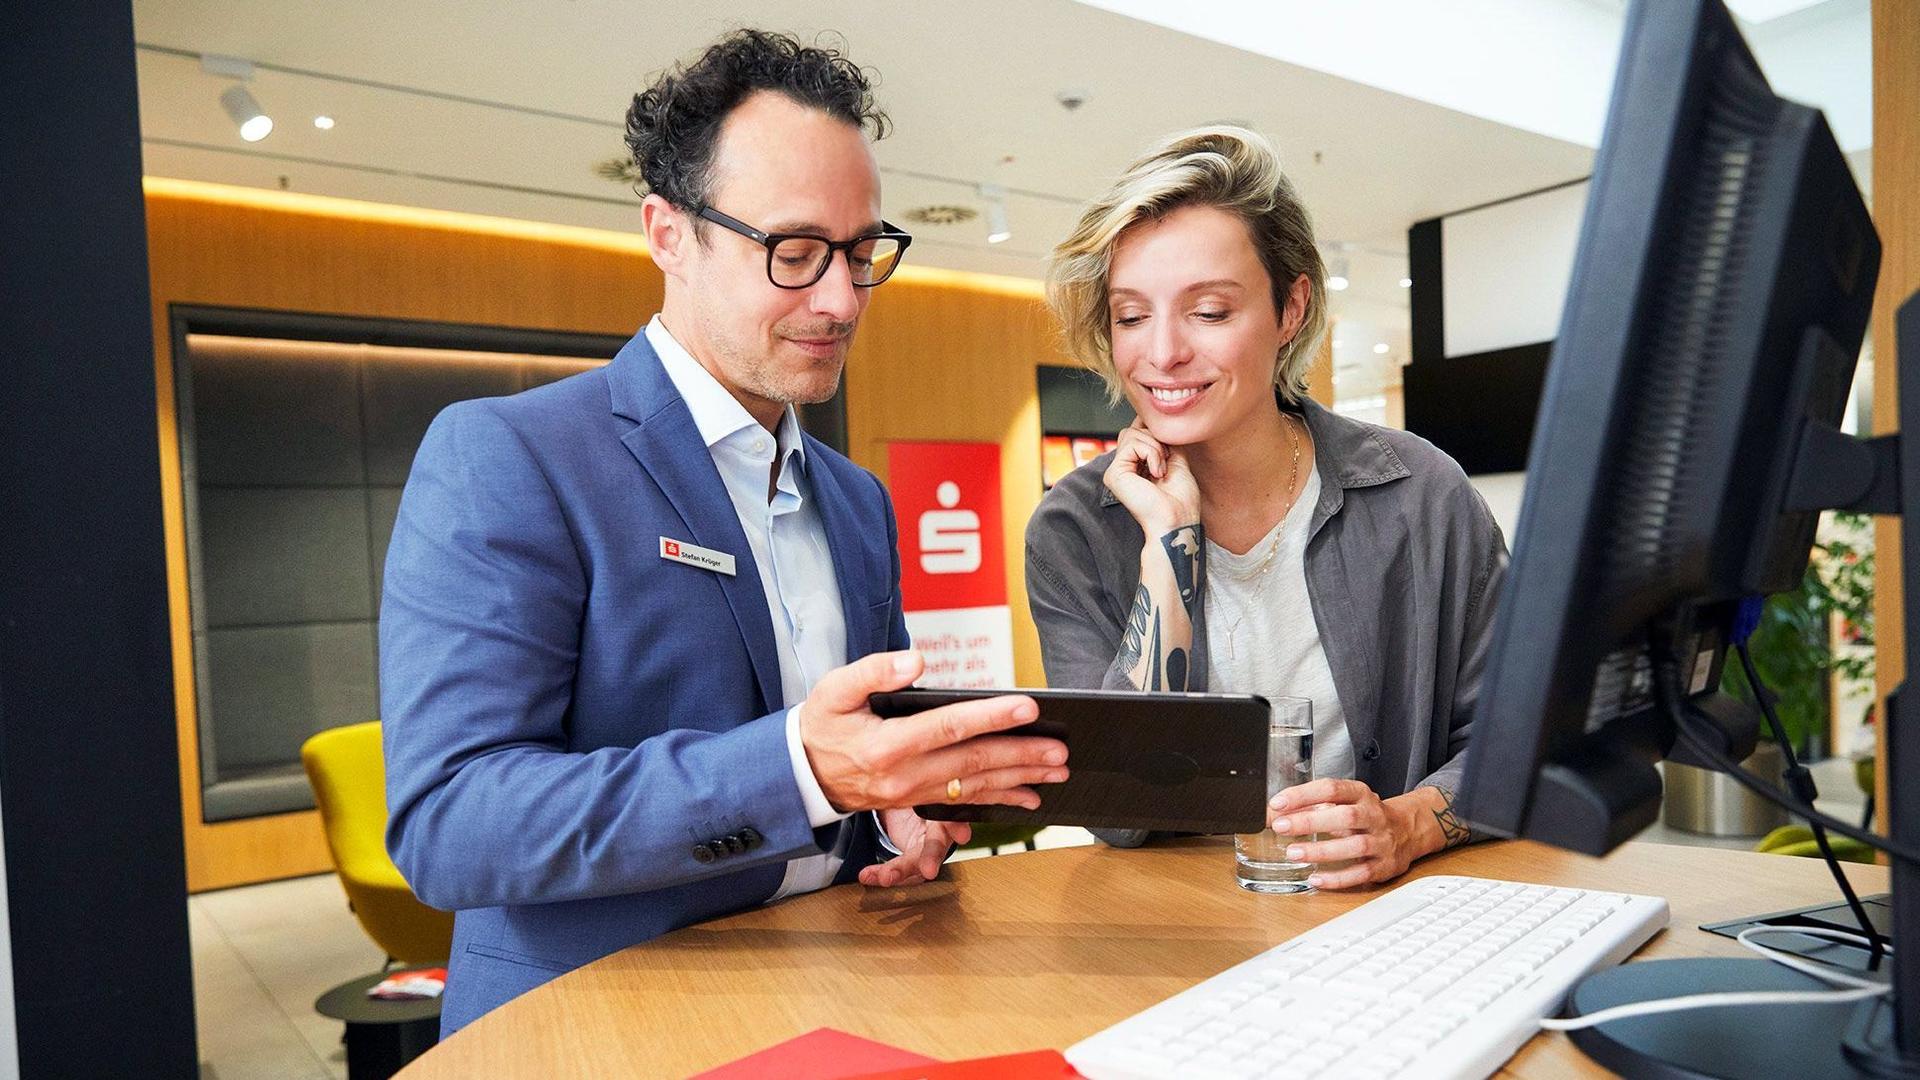 Ein Sparkassenberater zeigt einer Kundin in einer modern eingerichteten Filiale etwas auf einem Tabletdisplay. Sie beugt sich interessiert lächelnd nach vorne.